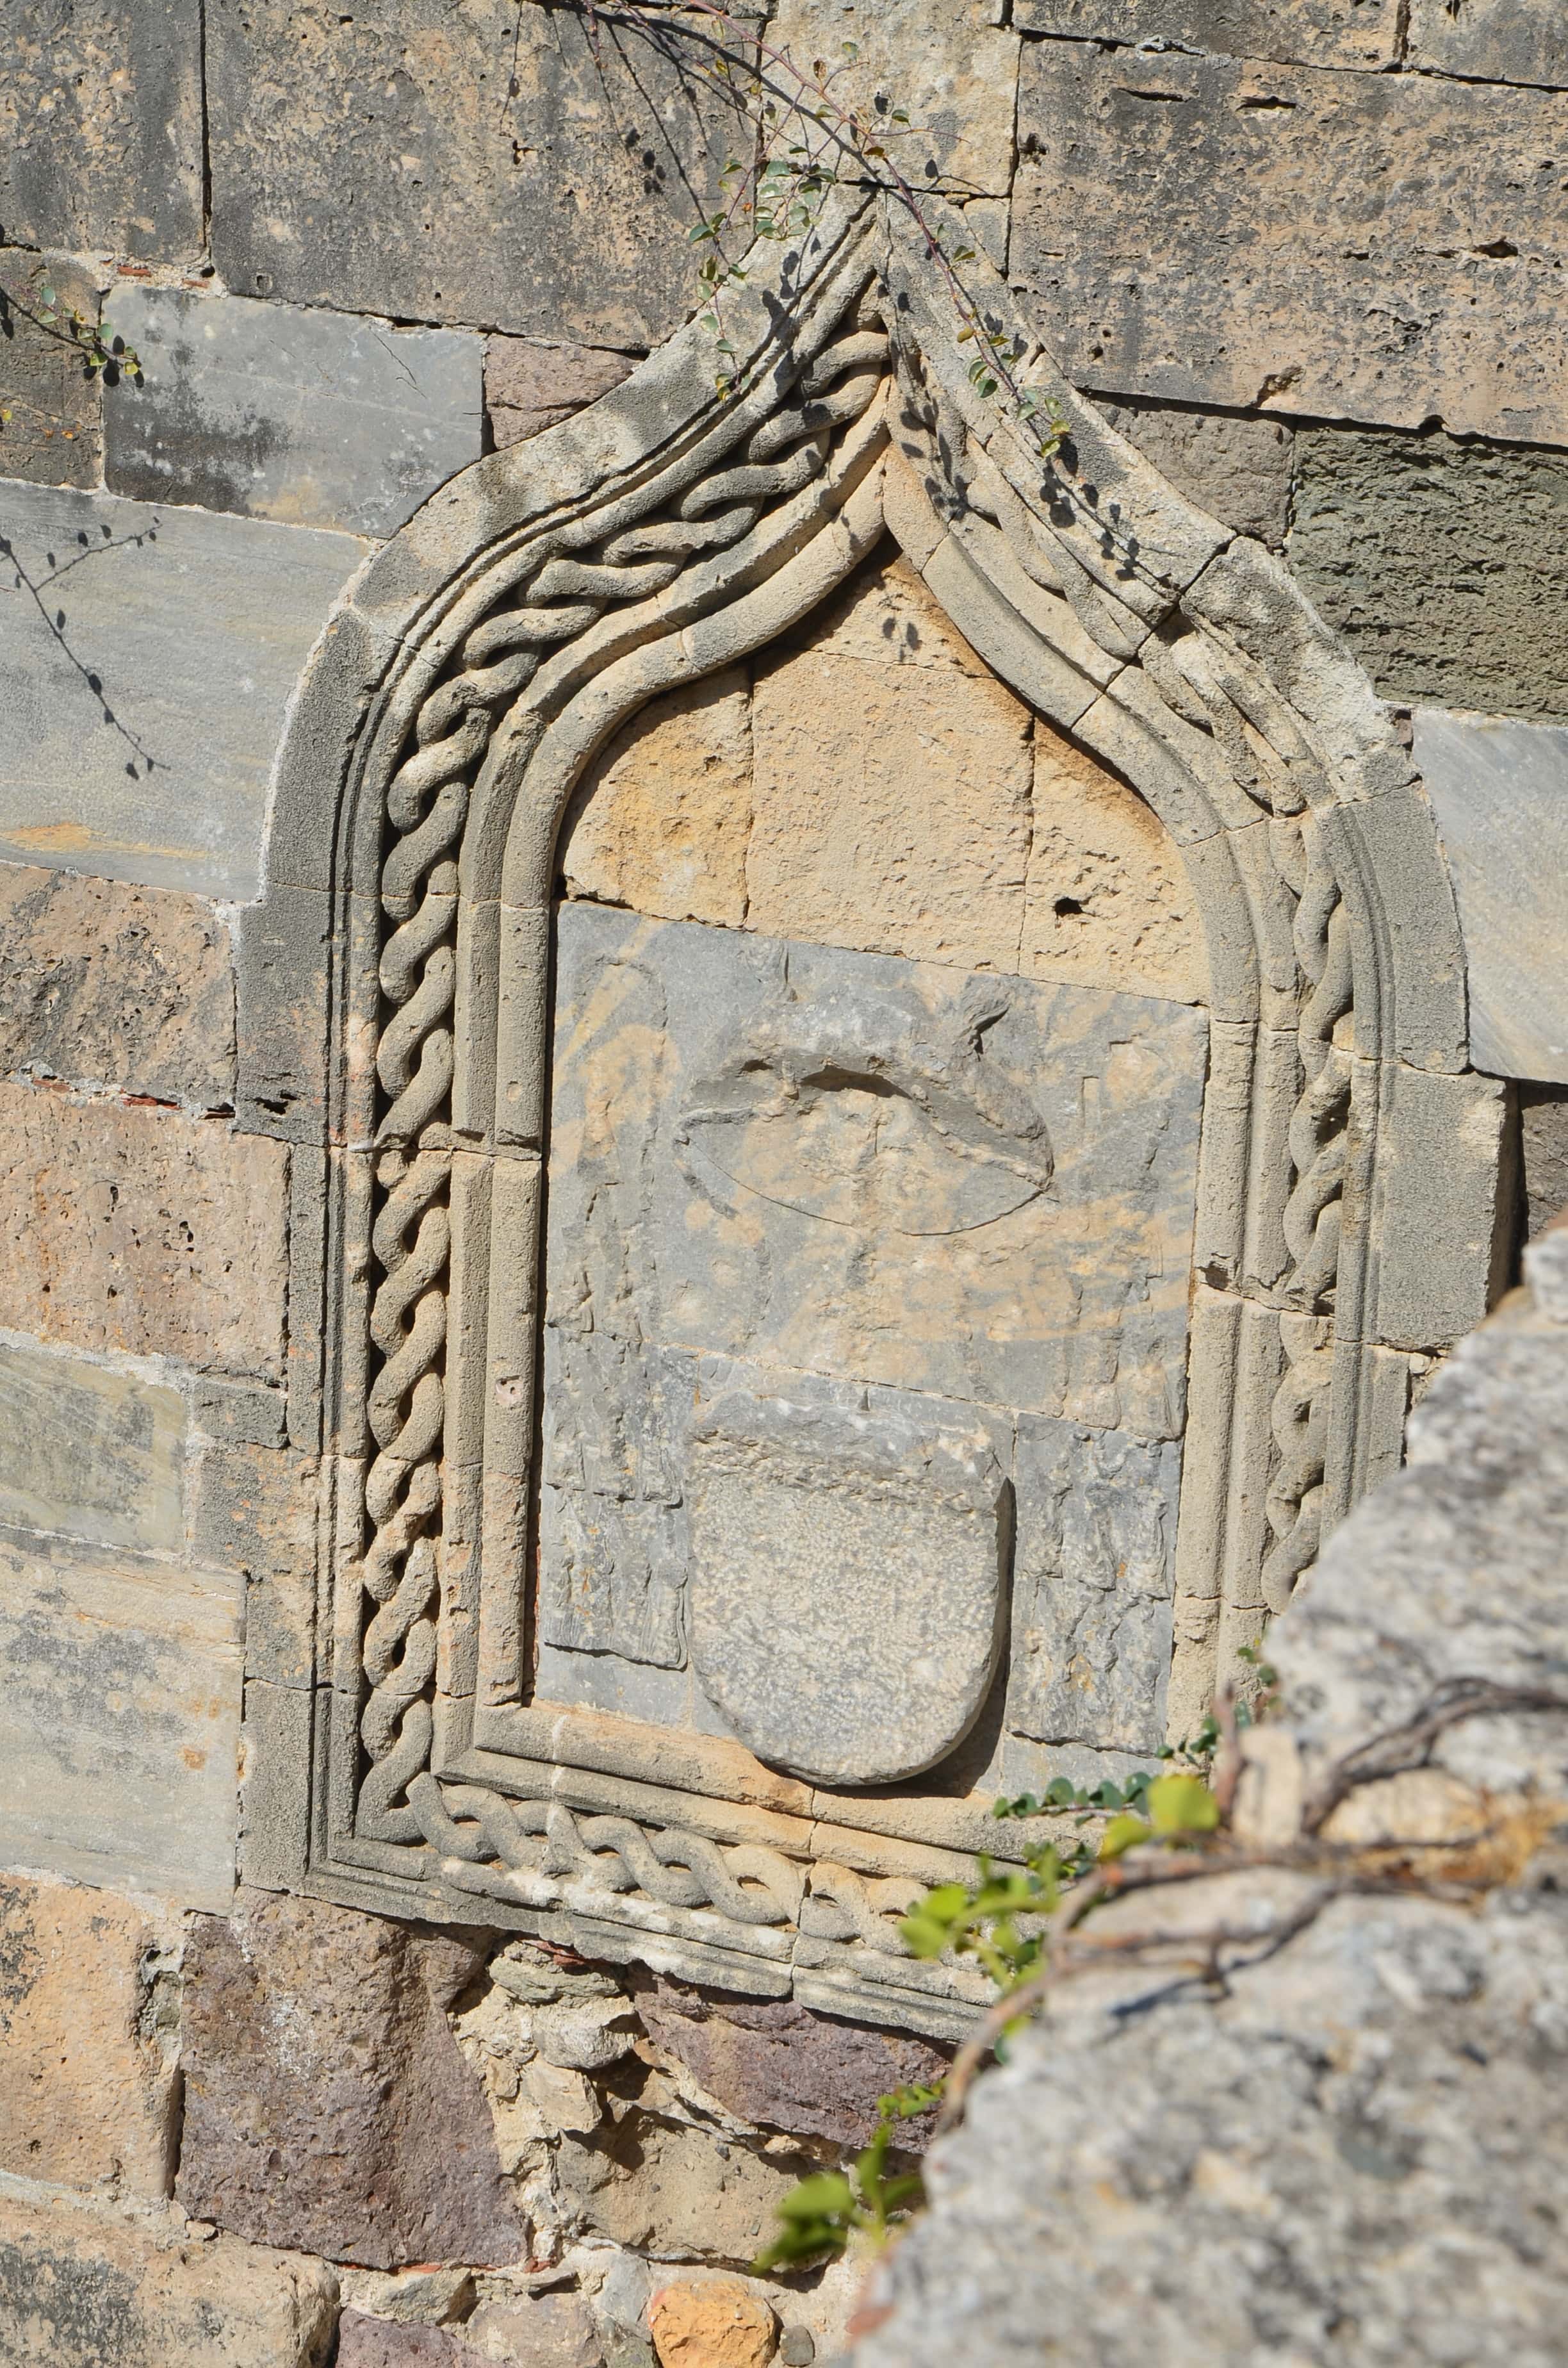 Ottoman prayer niche at the Castle of Neratzia in Kos, Greece